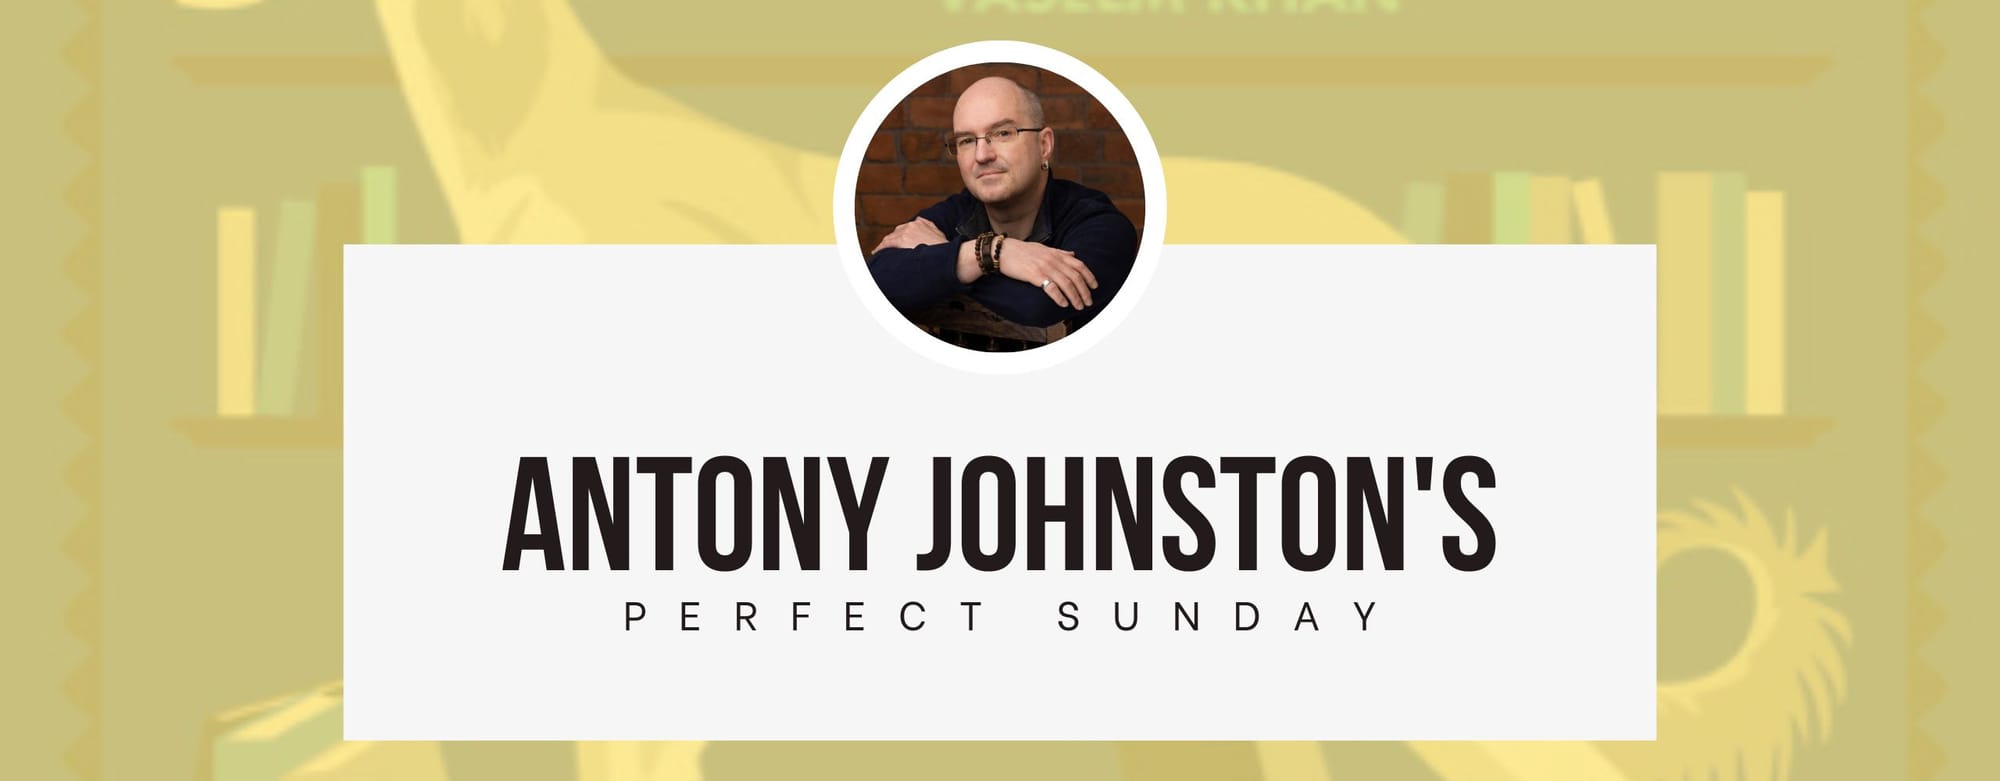 A perfect Sunday with... Antony Johnston